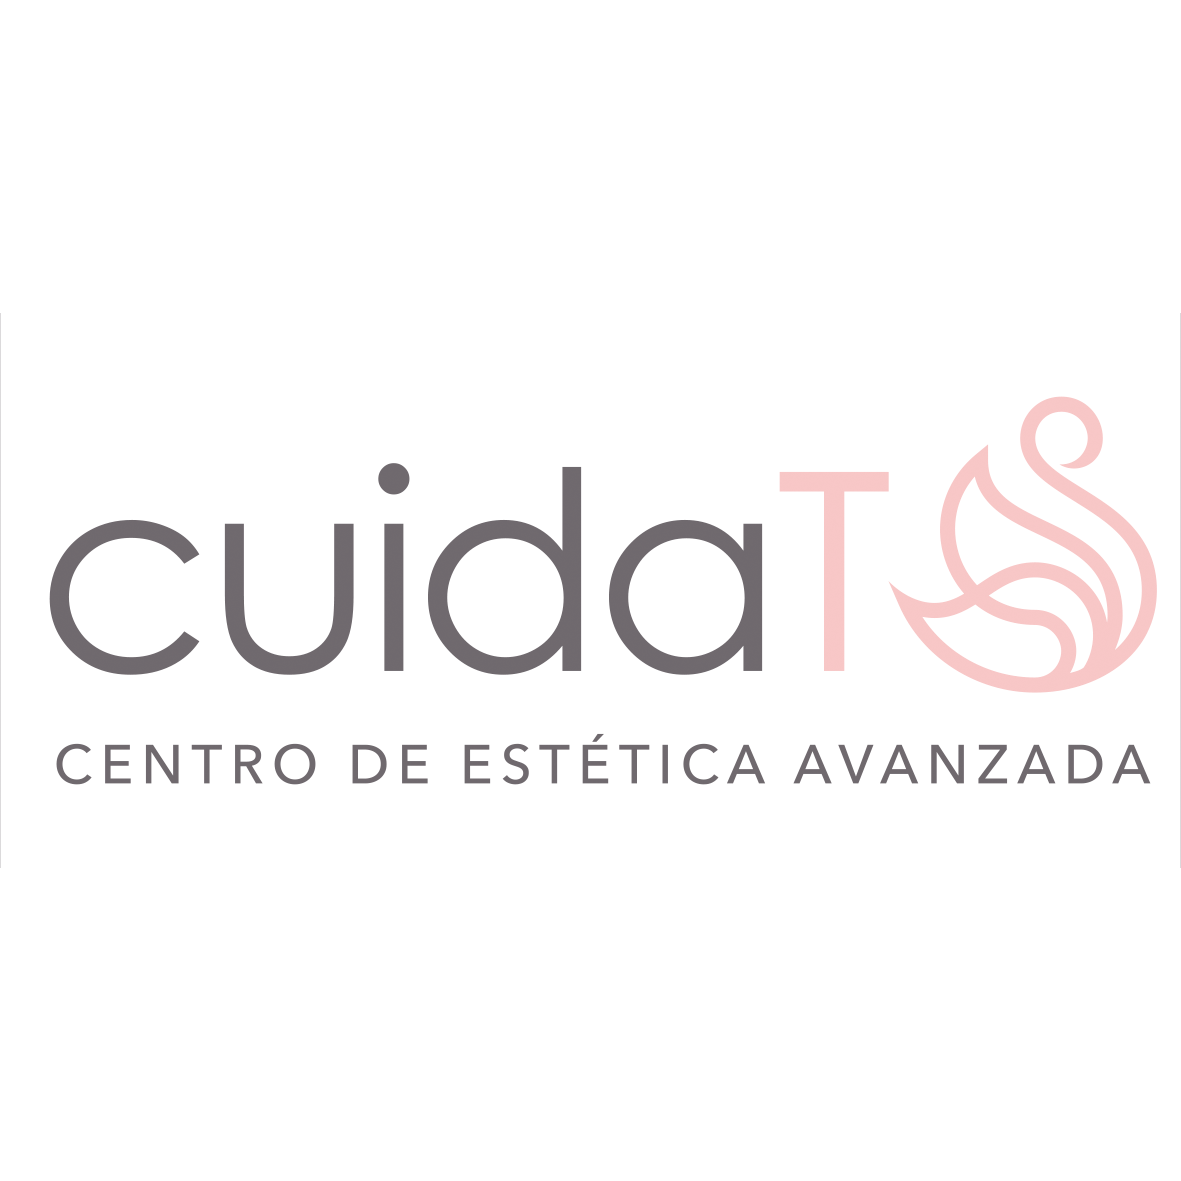 Centro de Estética Cuída-t Logo